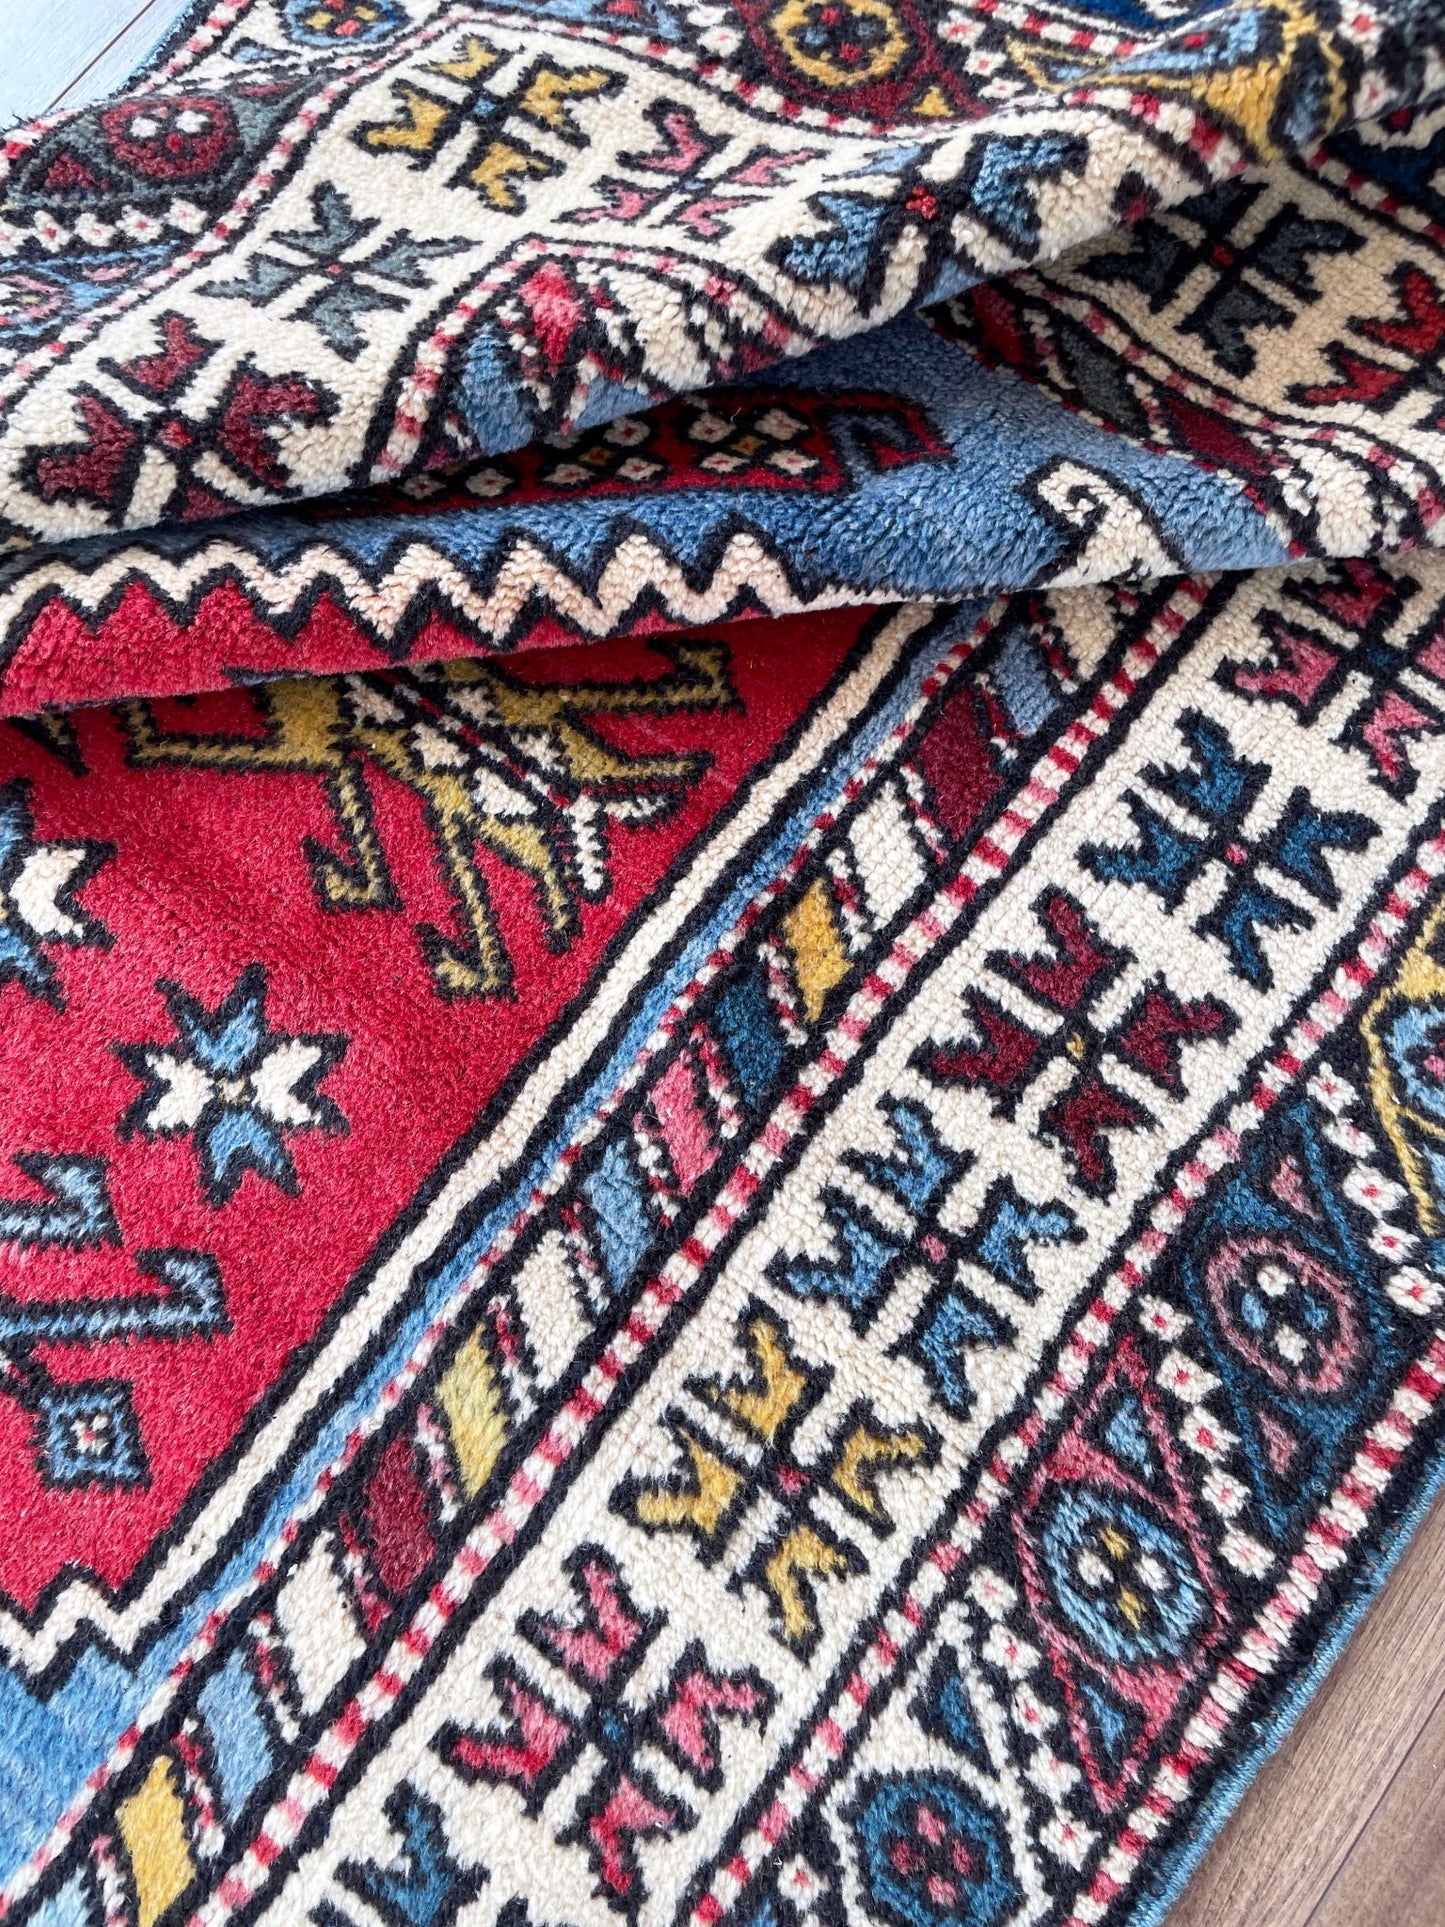 Yuntdag vintage turkish rug shop san francisco bay area rug shopping berkeley palo alto buy rugs online california